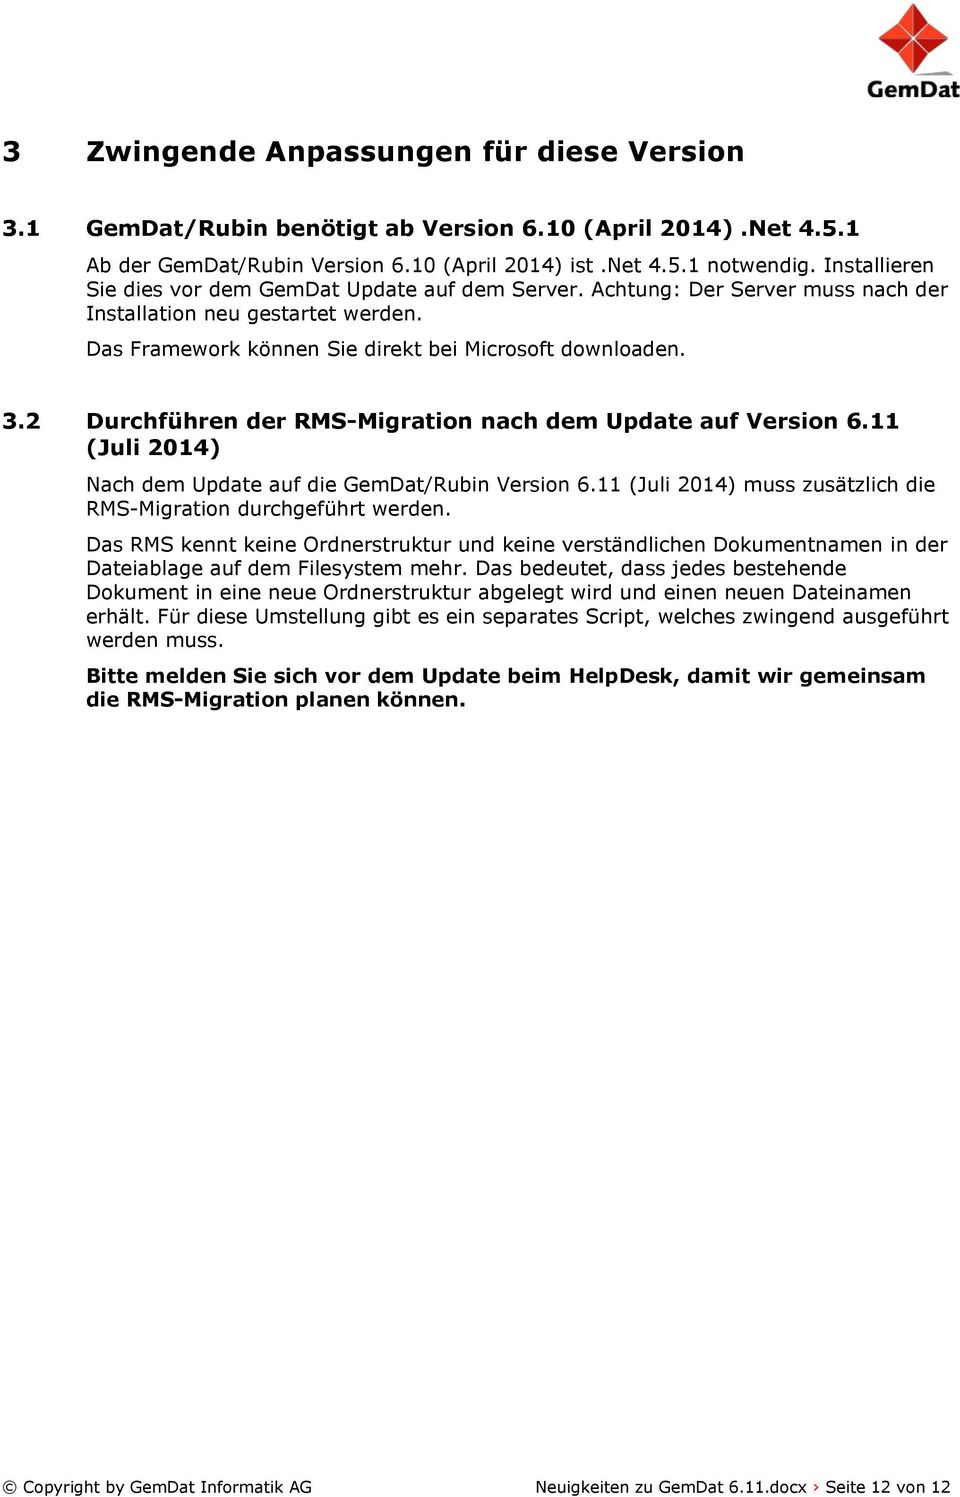 2 Durchführen der RMS-Migration nach dem Update auf Version 6.11 (Juli 2014) Nach dem Update auf die GemDat/Rubin Version 6.11 (Juli 2014) muss zusätzlich die RMS-Migration durchgeführt werden.